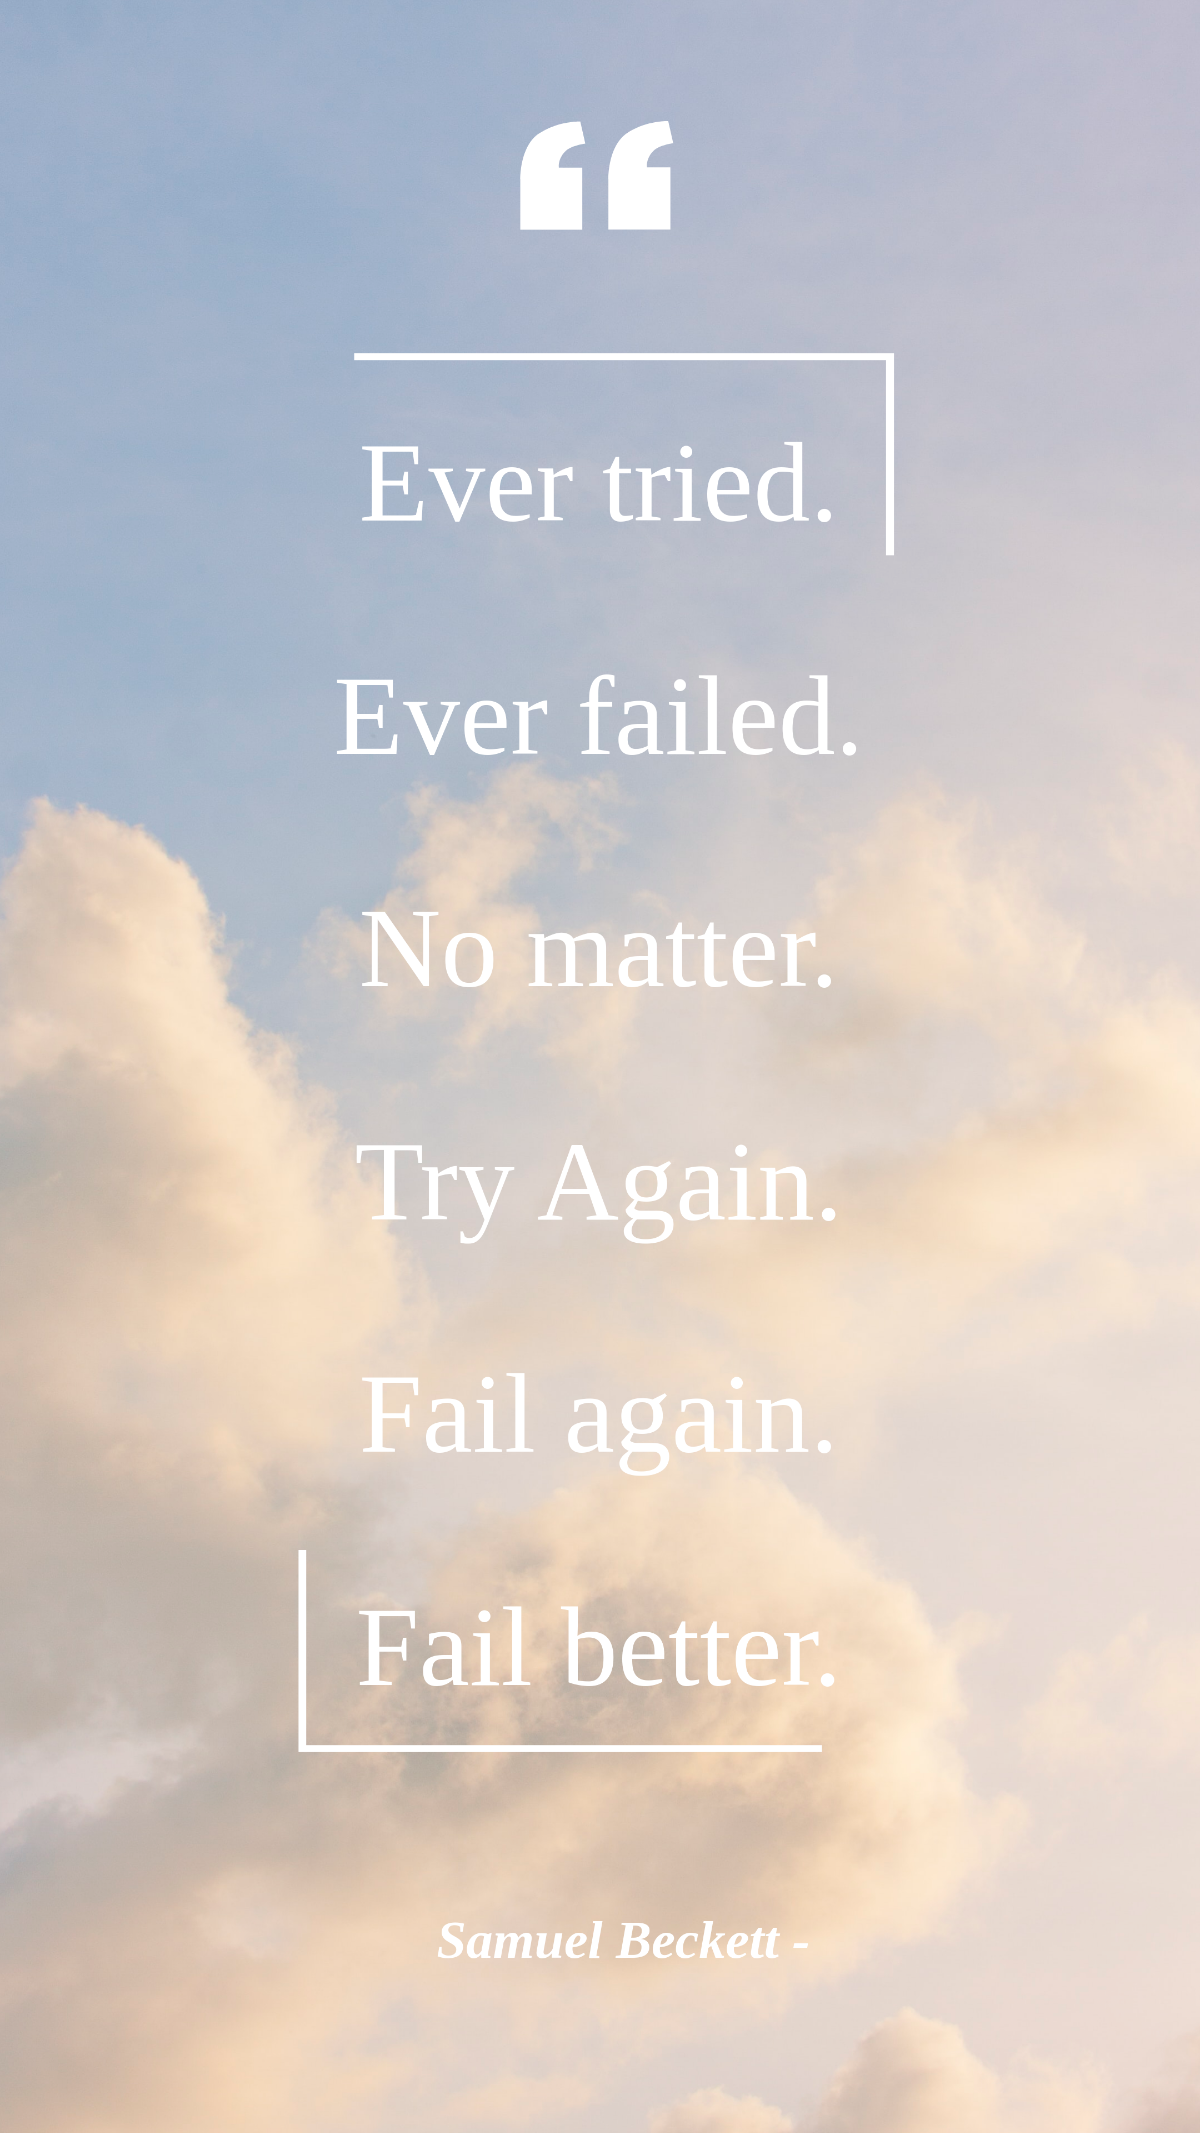 Samuel Beckett - Ever tried. Ever failed. No matter. Try Again. Fail again. Fail better. Template